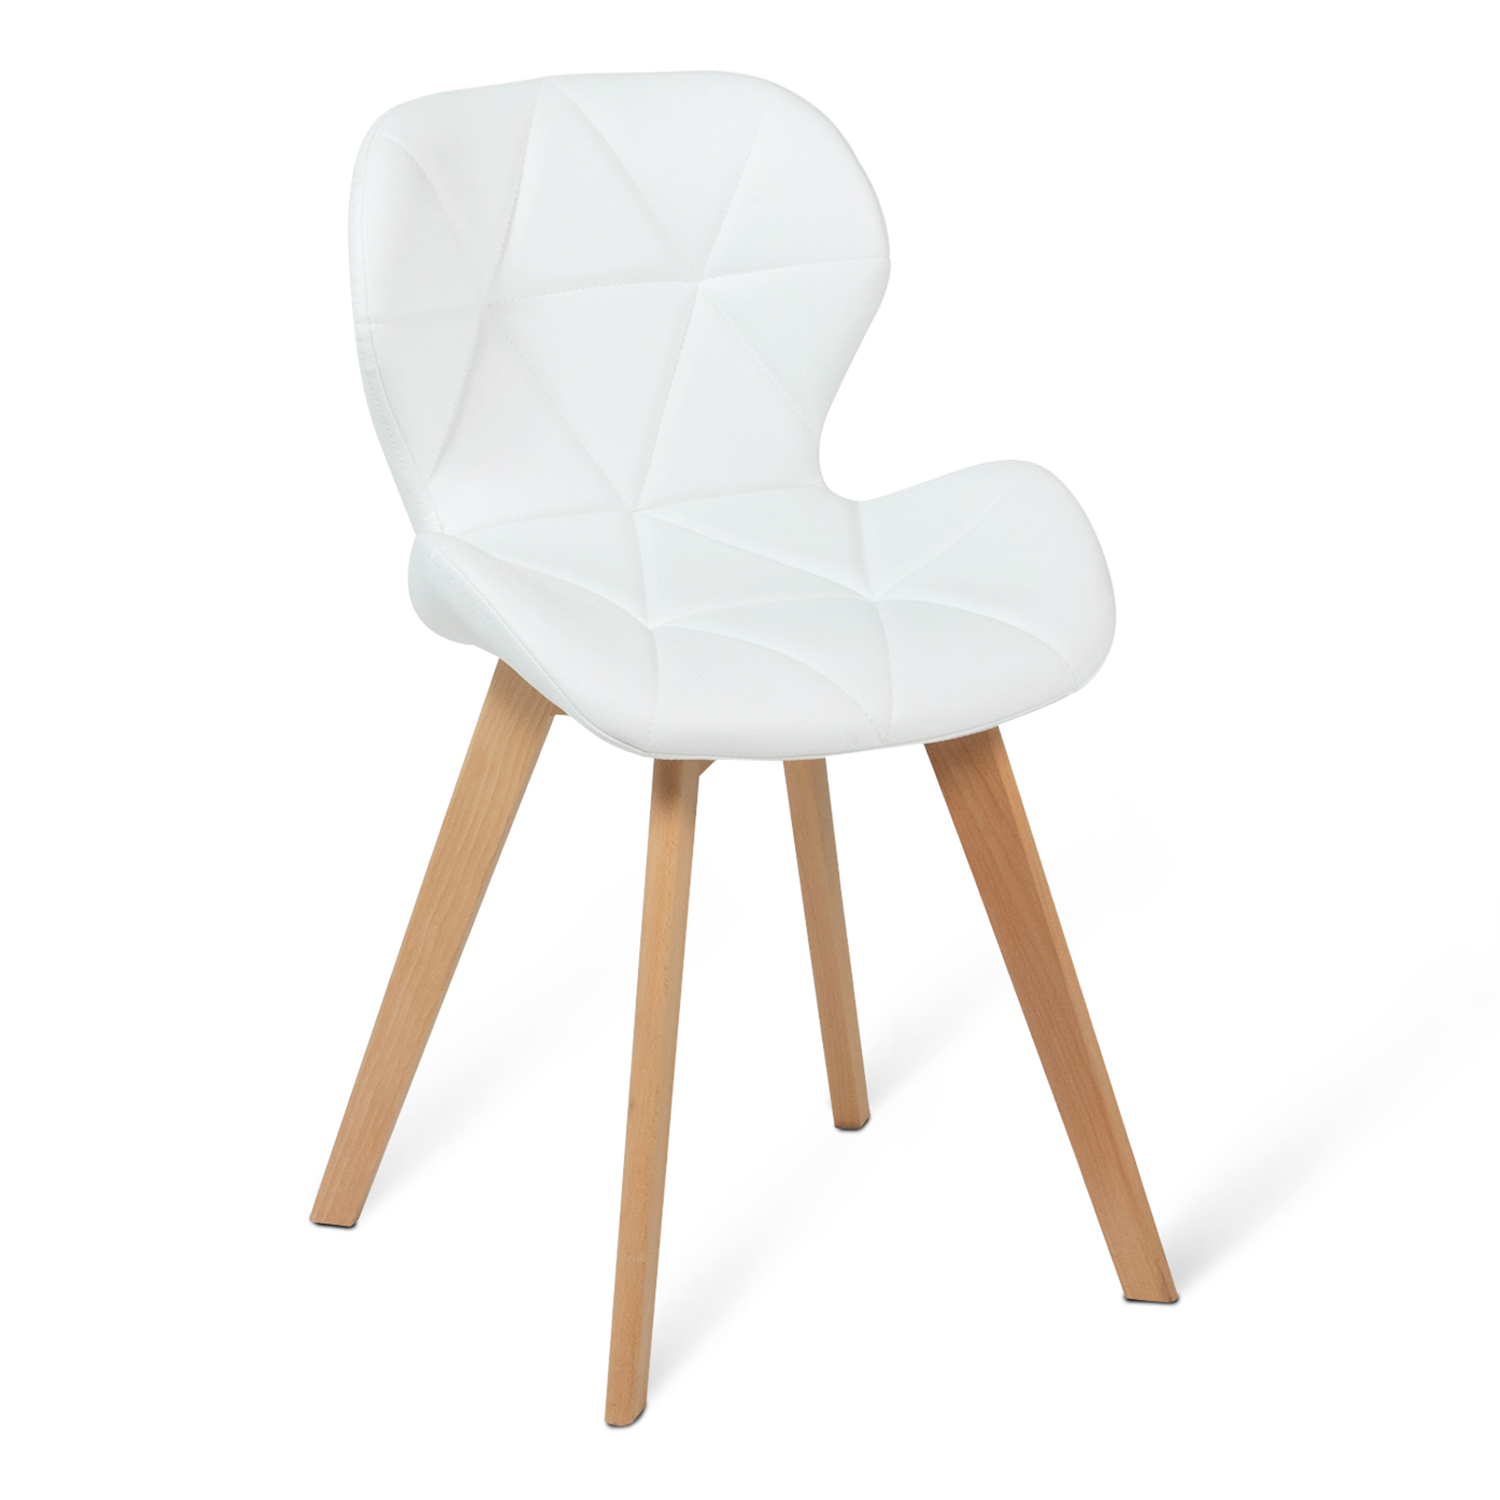 Carrefour - ALTEA - Chaise de jardin - Blanc - 862678 - Chaises de